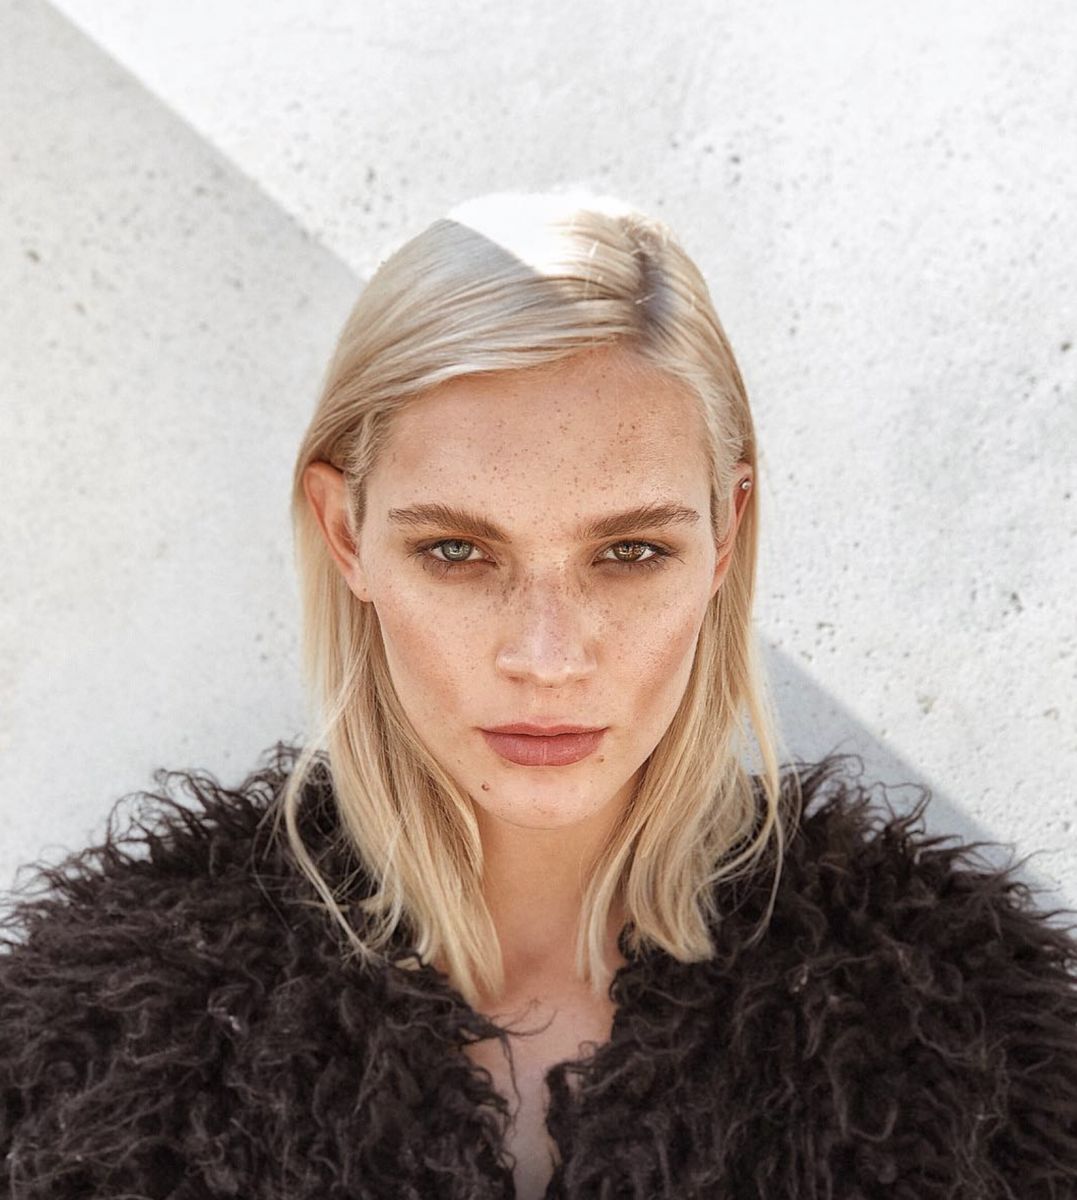 Balistarz-model-Liliya-Abraimova-headshot-fur-coat-shoot-beautiful-eyes